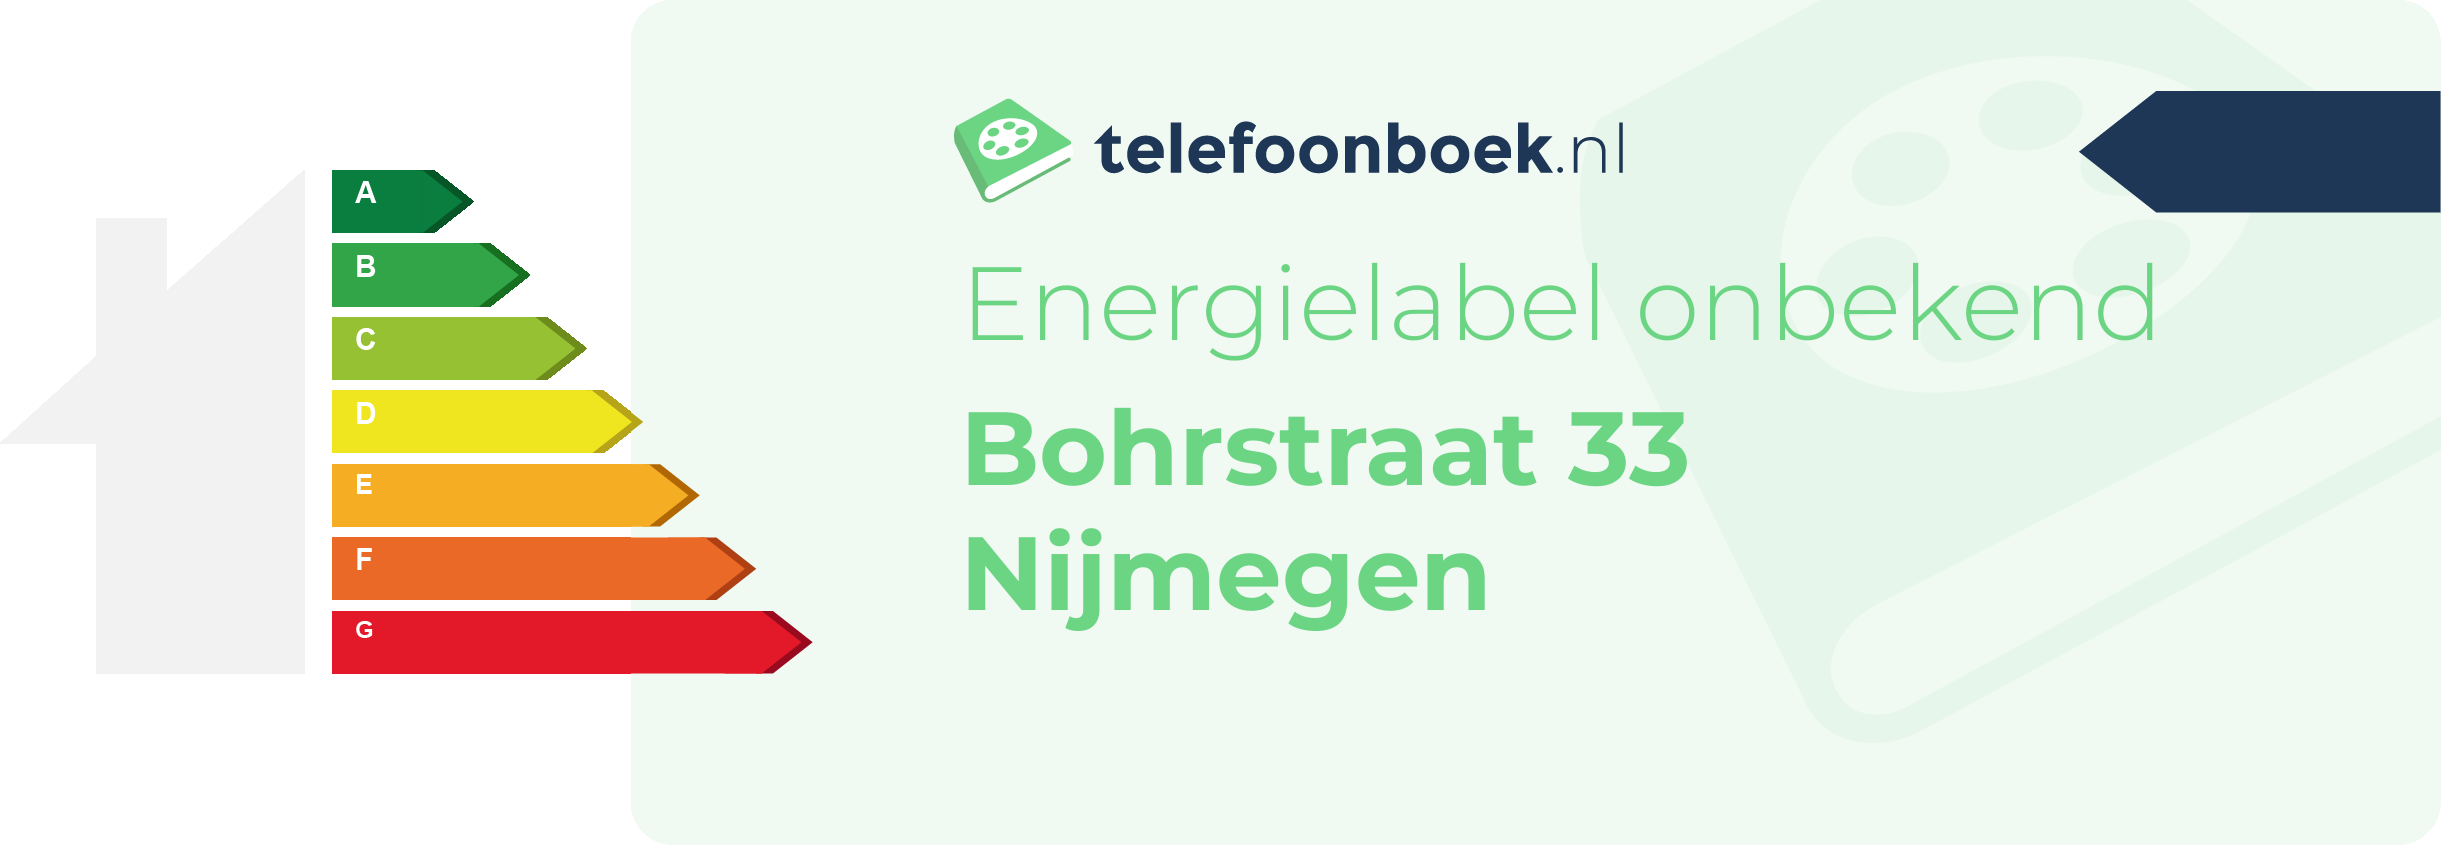 Energielabel Bohrstraat 33 Nijmegen